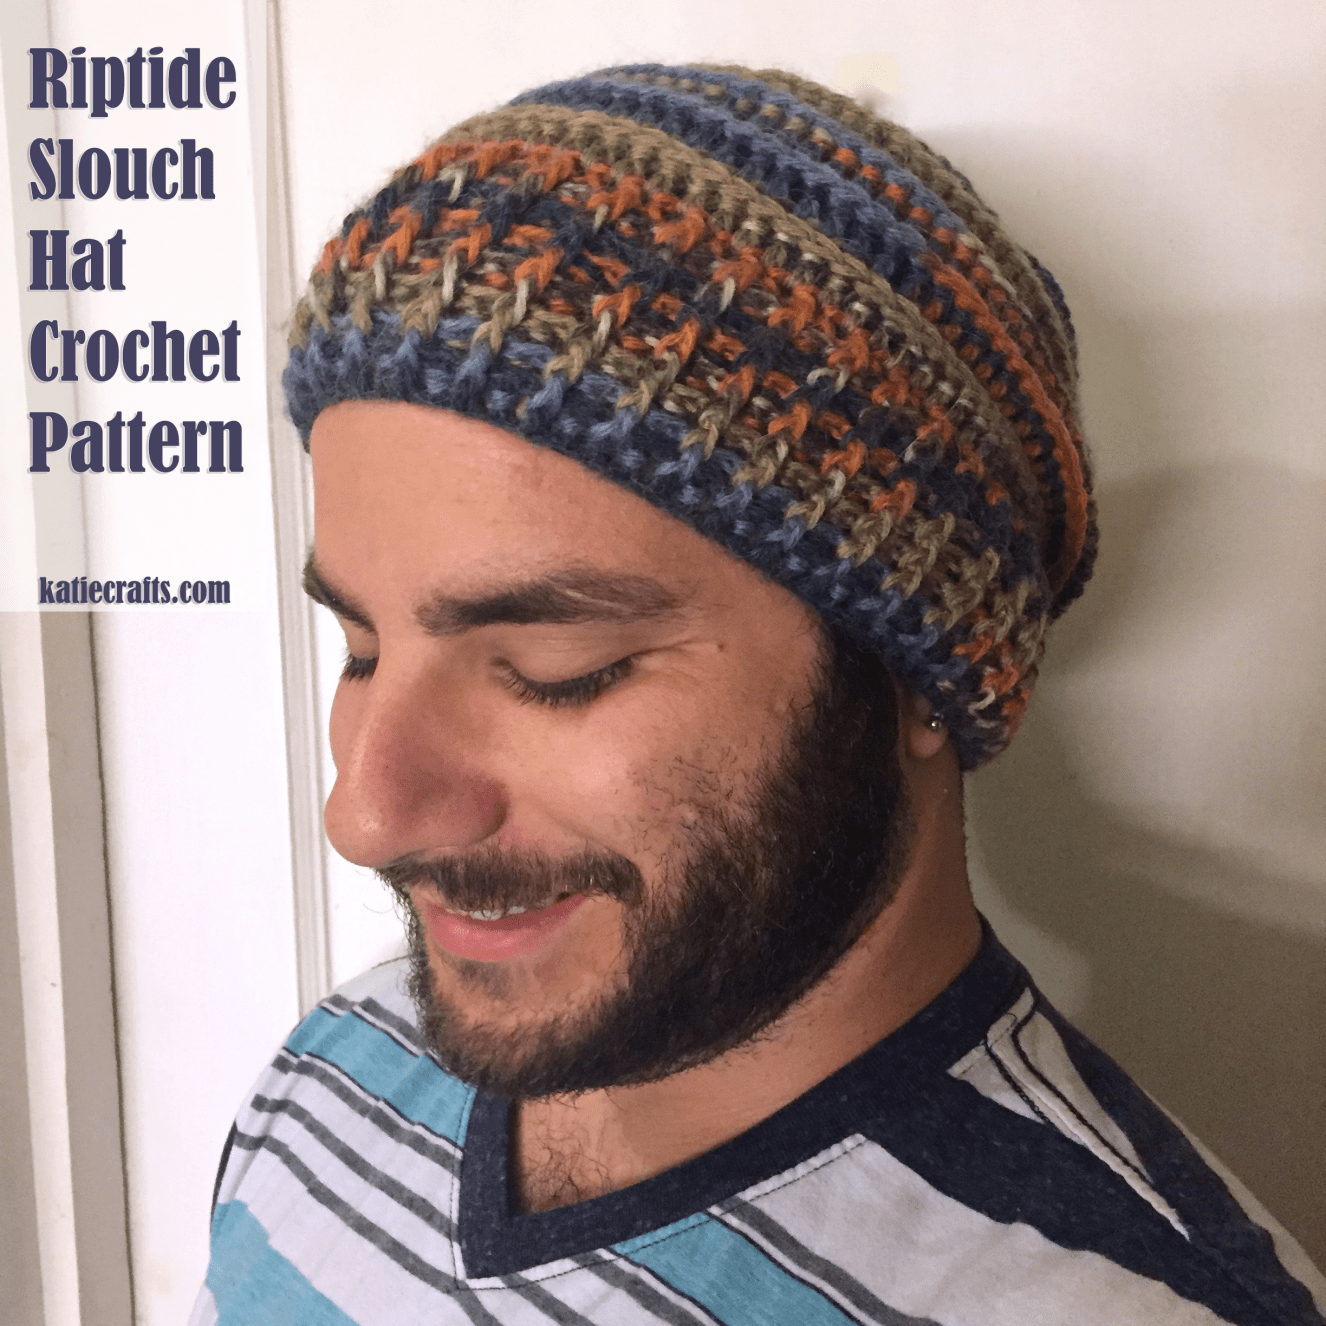 Riptide Slouch Hat Crochet Pattern on Katie Crafts; https://www.katiecrafts.com